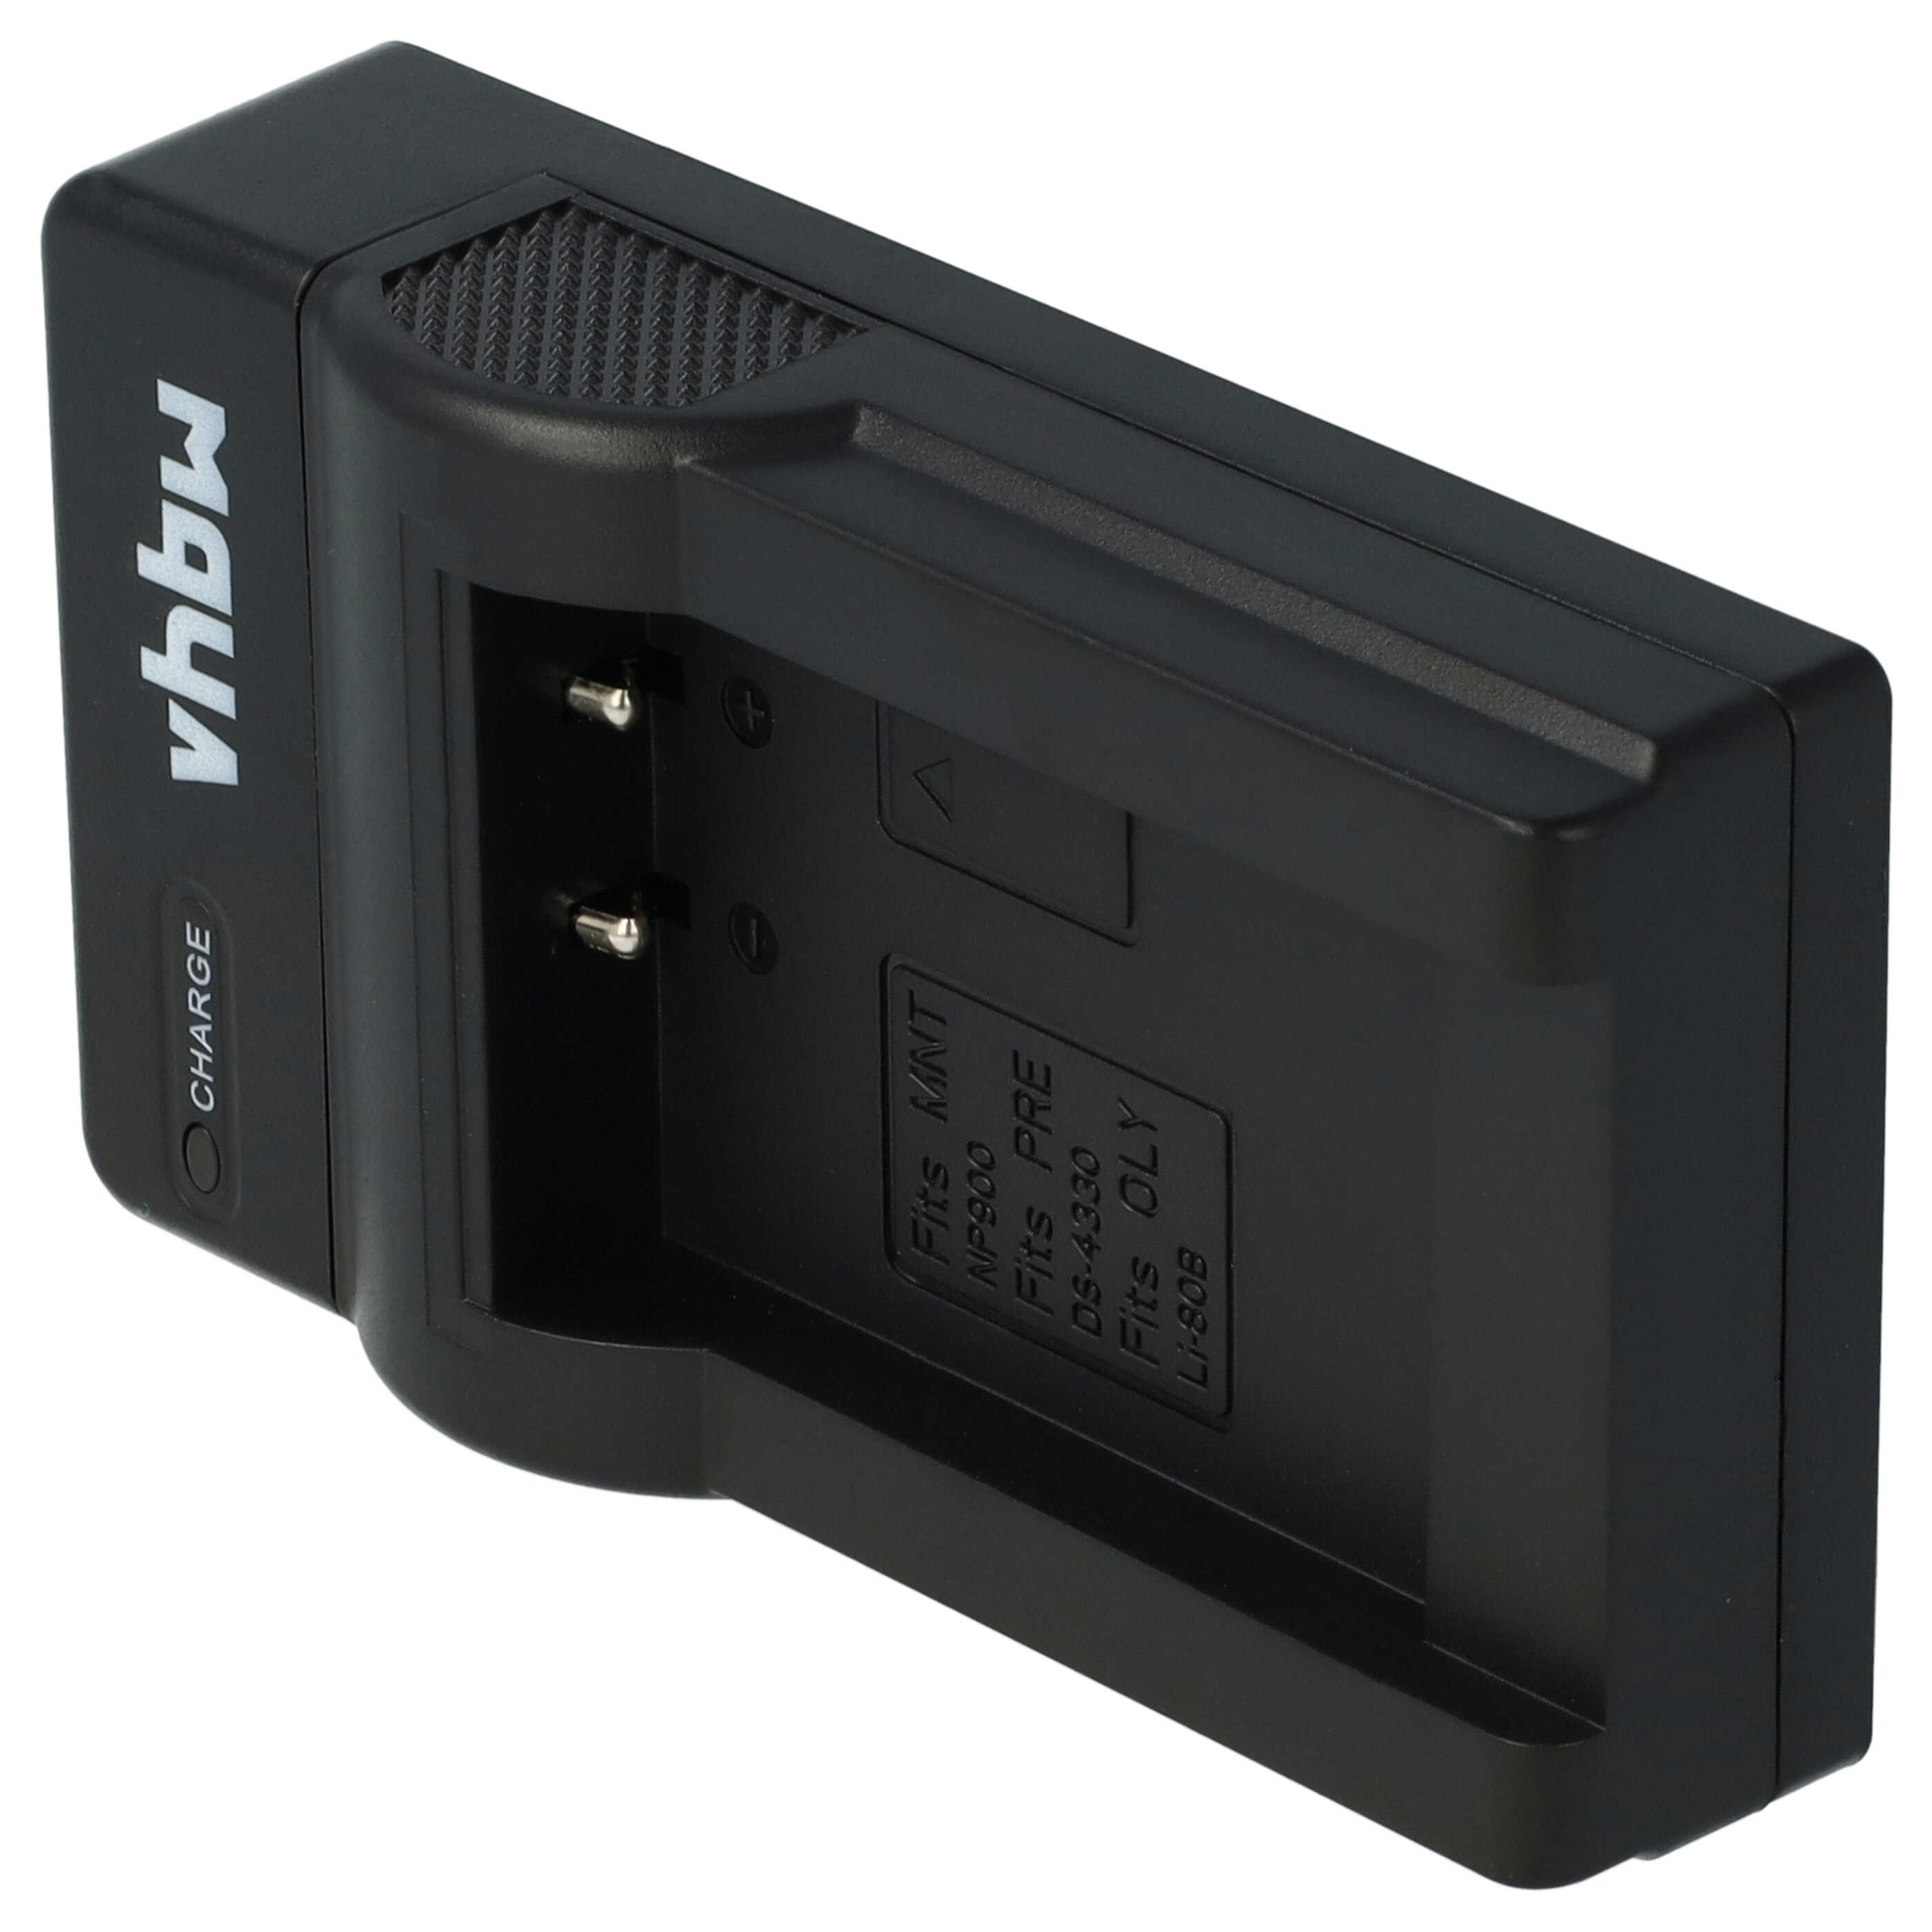 Akku Ladegerät passend für TCM Digitalkamera und weitere - 0,5 A, 4,2 V